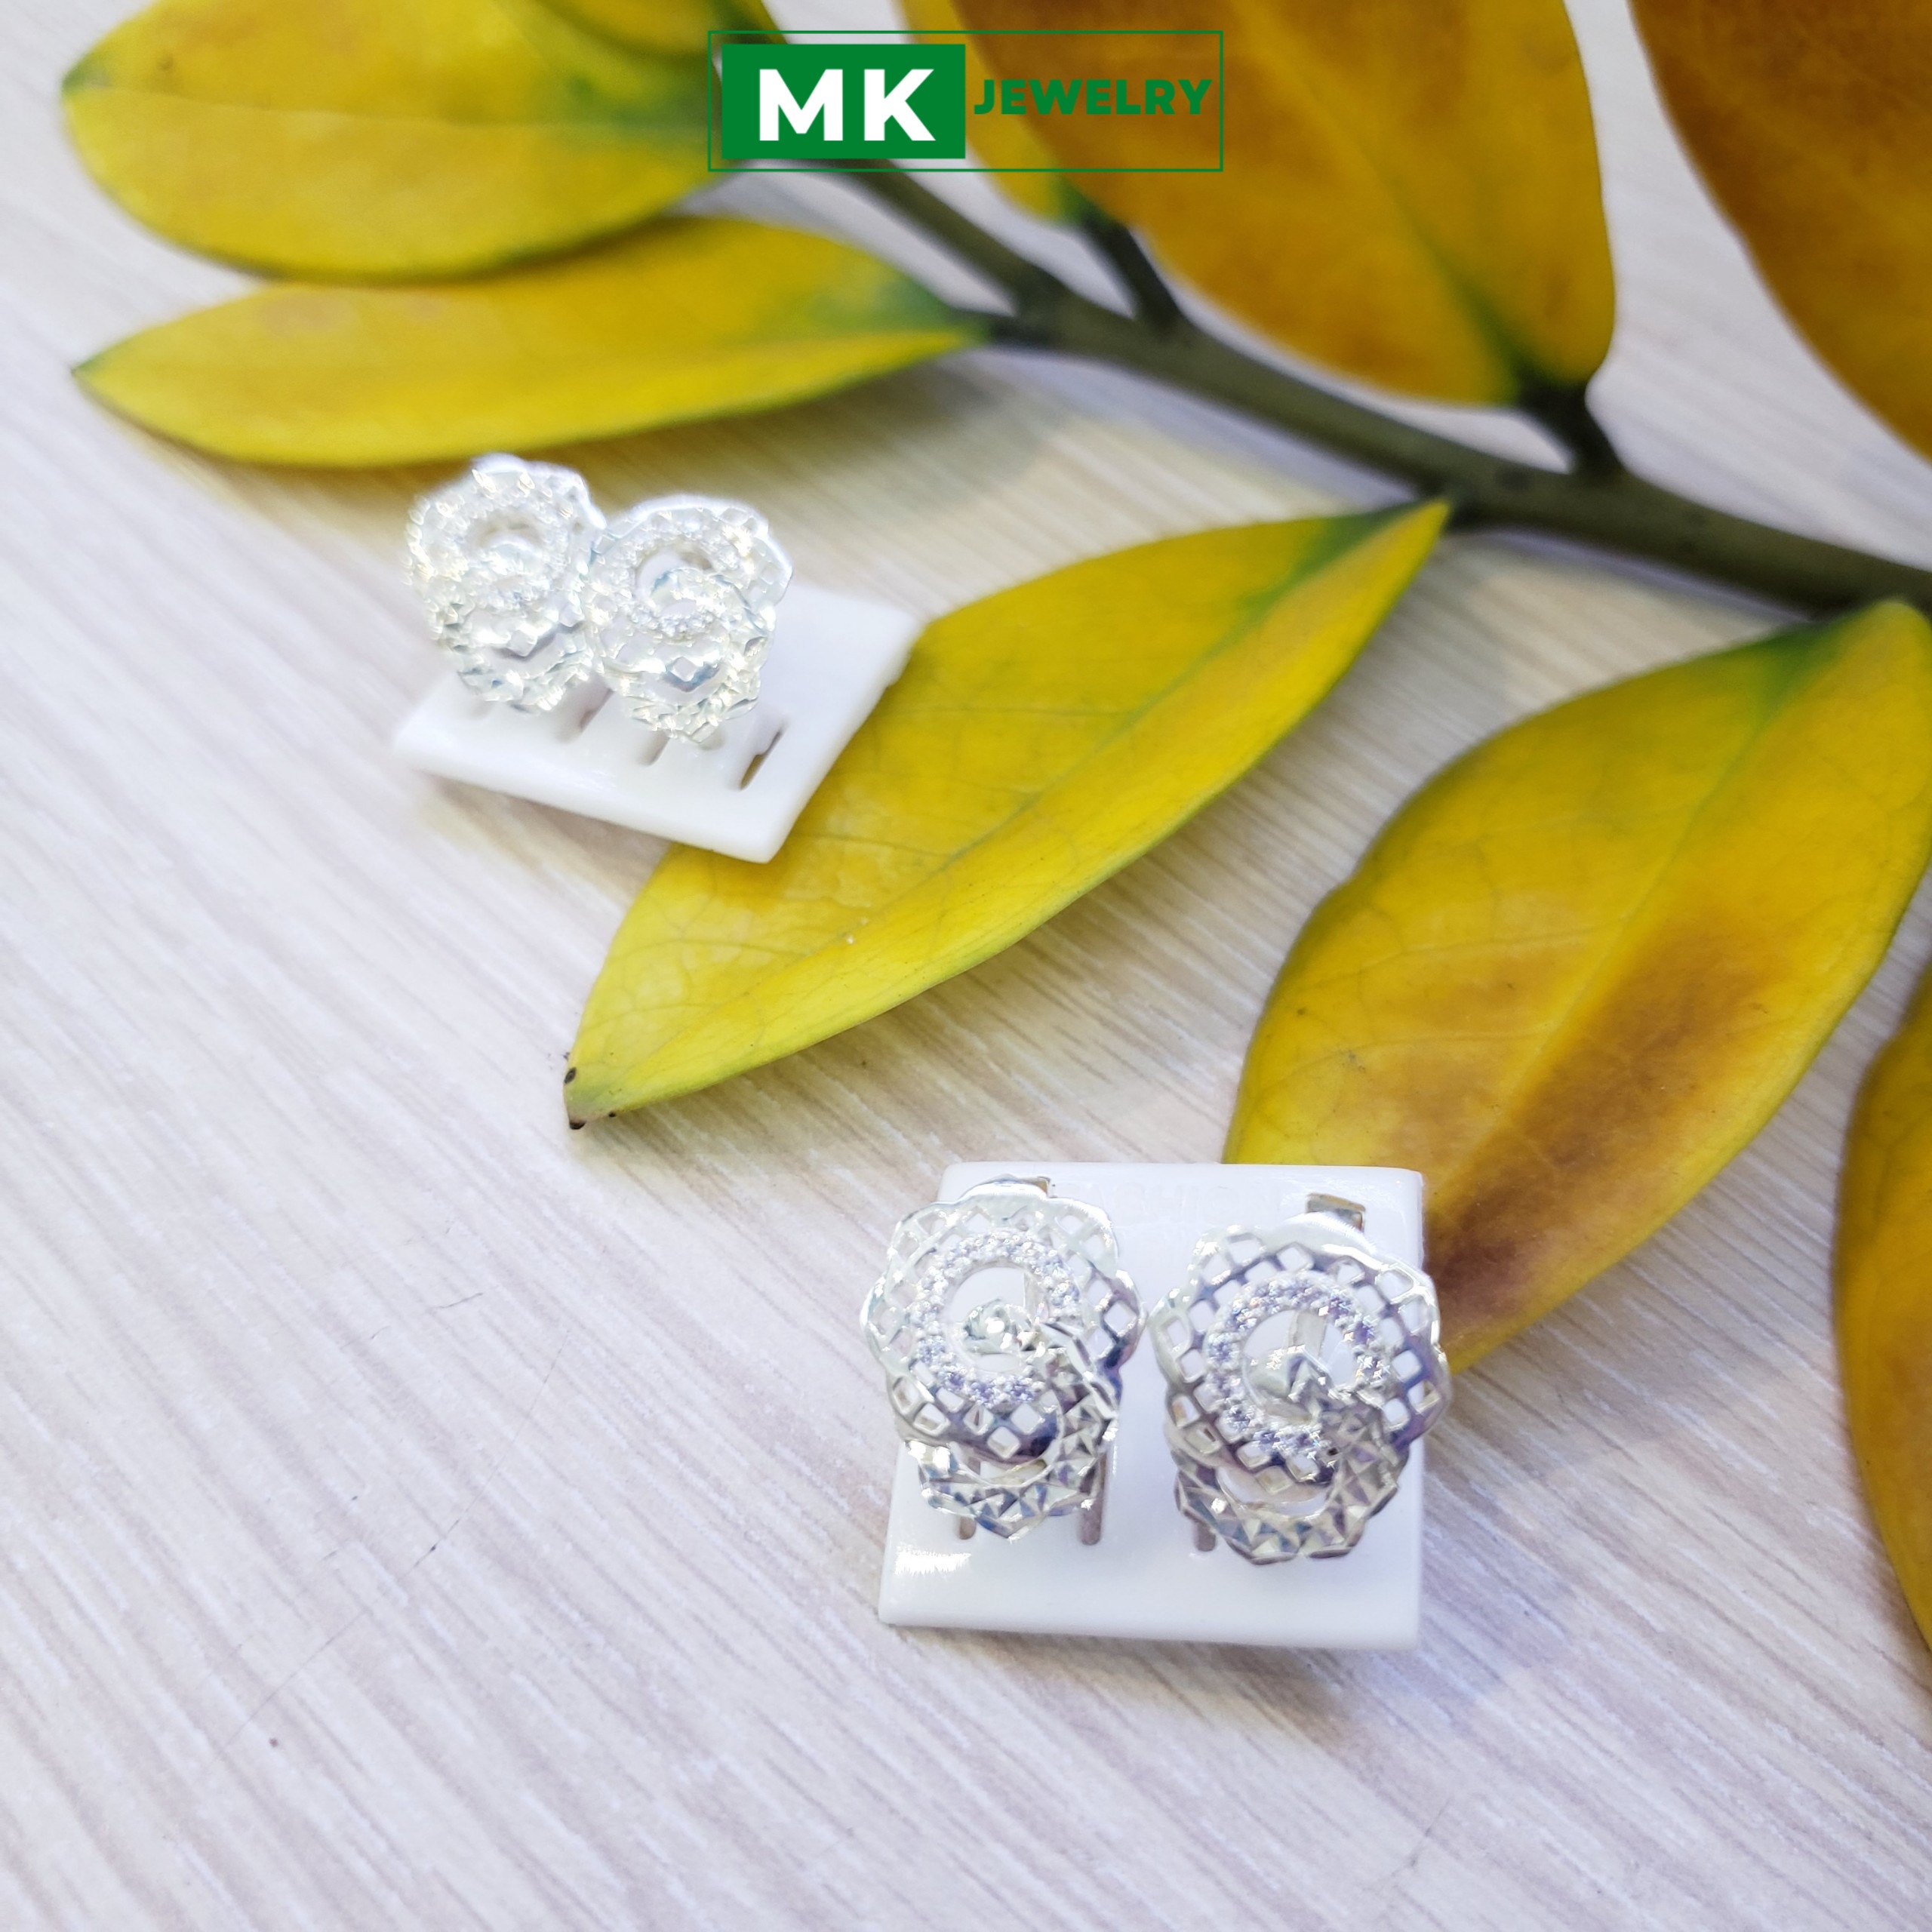 Bông vò gà chạm máy kèm đính đá kểu dáng sang trọng, chuẩn bạc cao cấp 925 ( ảnh chụp thật ) - MK Jewelry